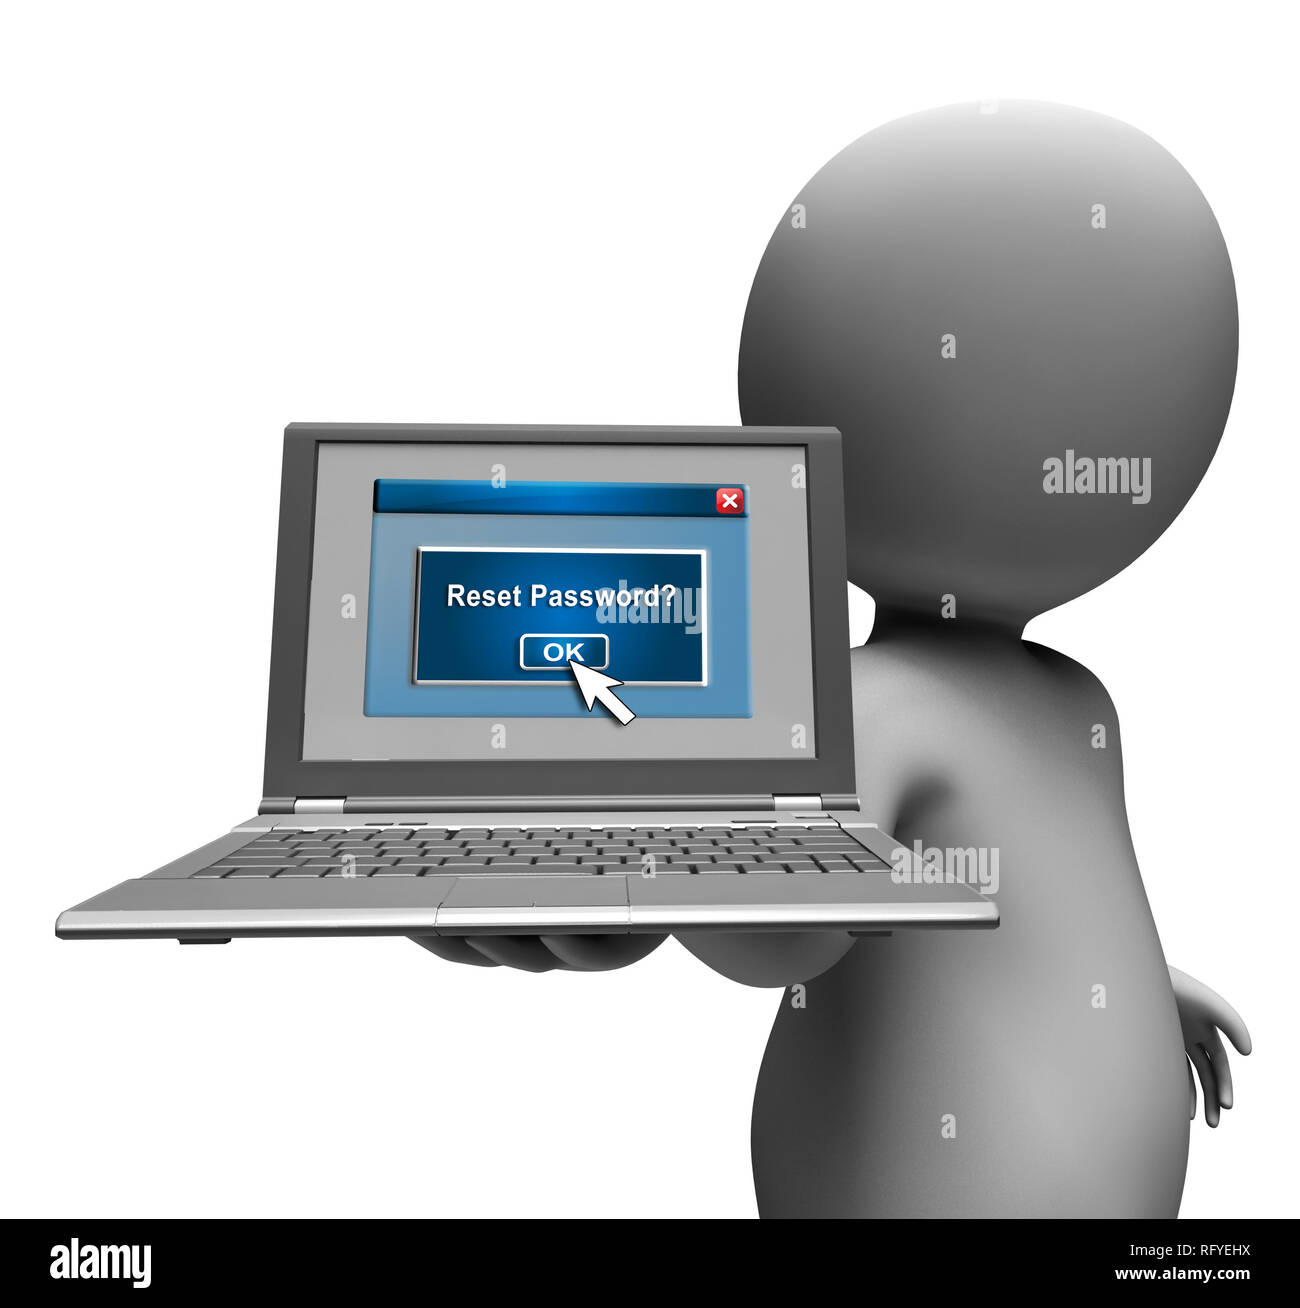 Passwort zurücksetzen Laptop zu wiederholen, Sicherheit der PC. Neuen Code  zur Sicherung Computer - 3D-Darstellung Stockfotografie - Alamy